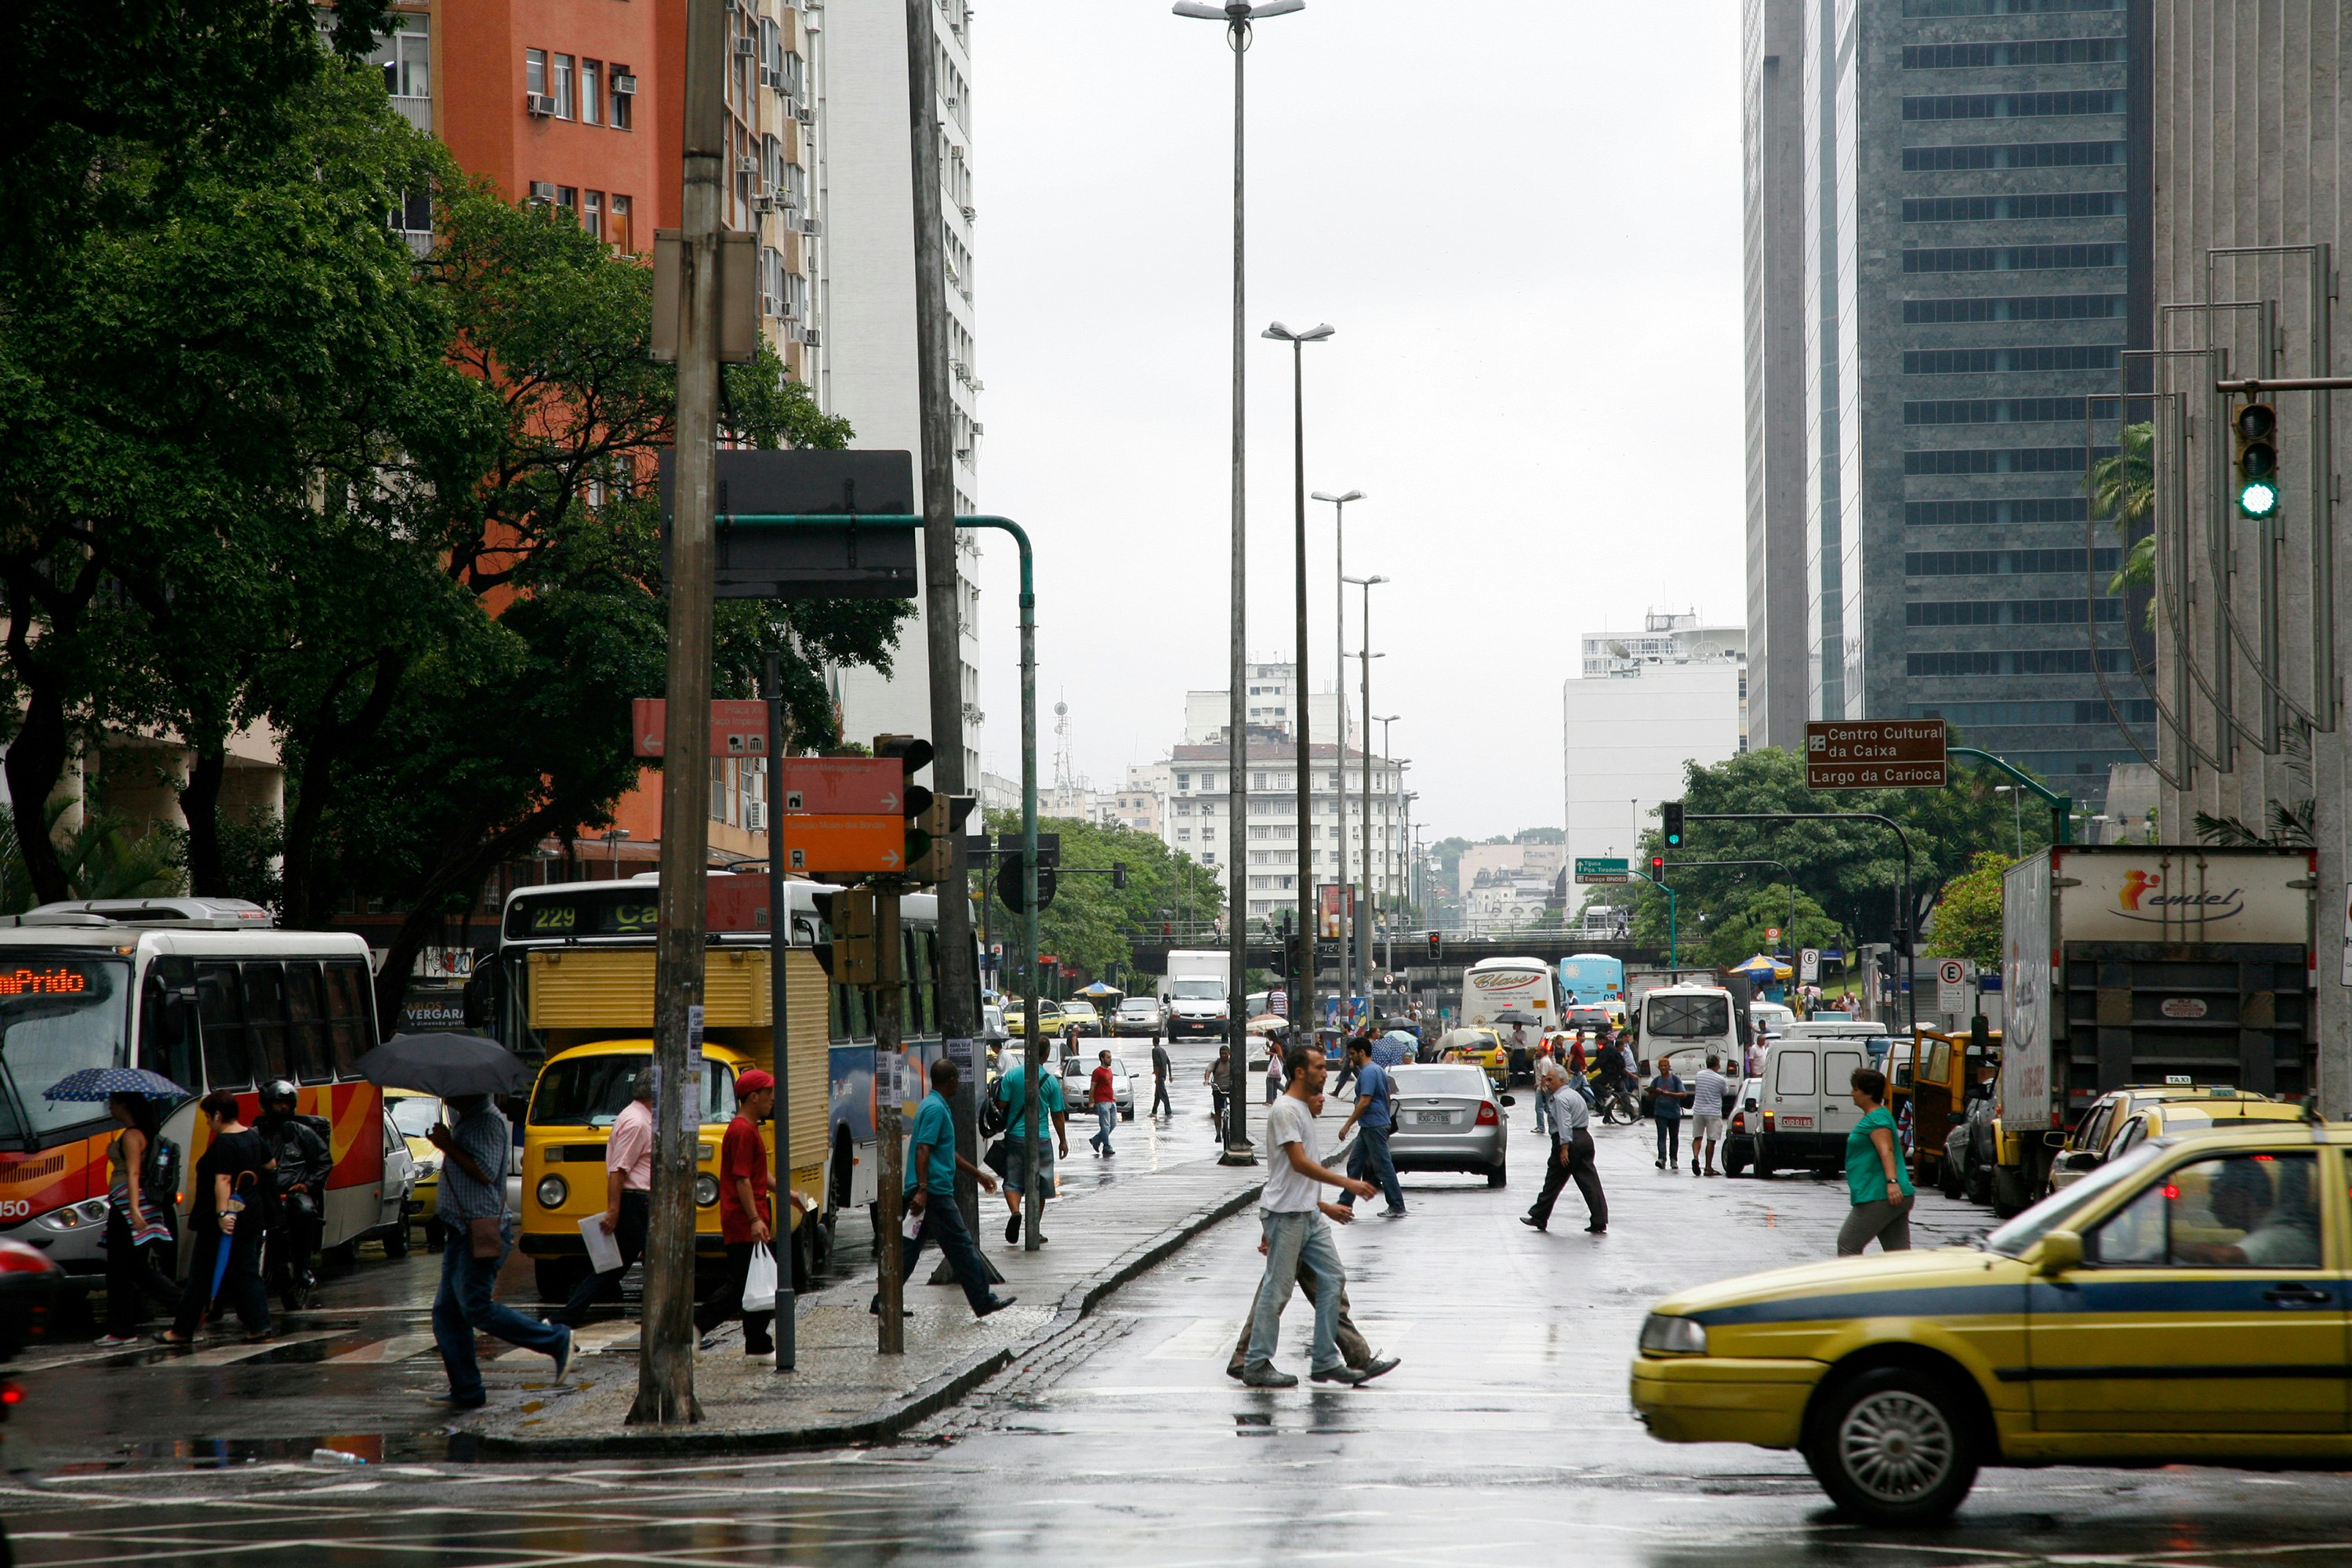 Pedestrians cross an intersection in downtown Rio de Janeiro, Brazil.